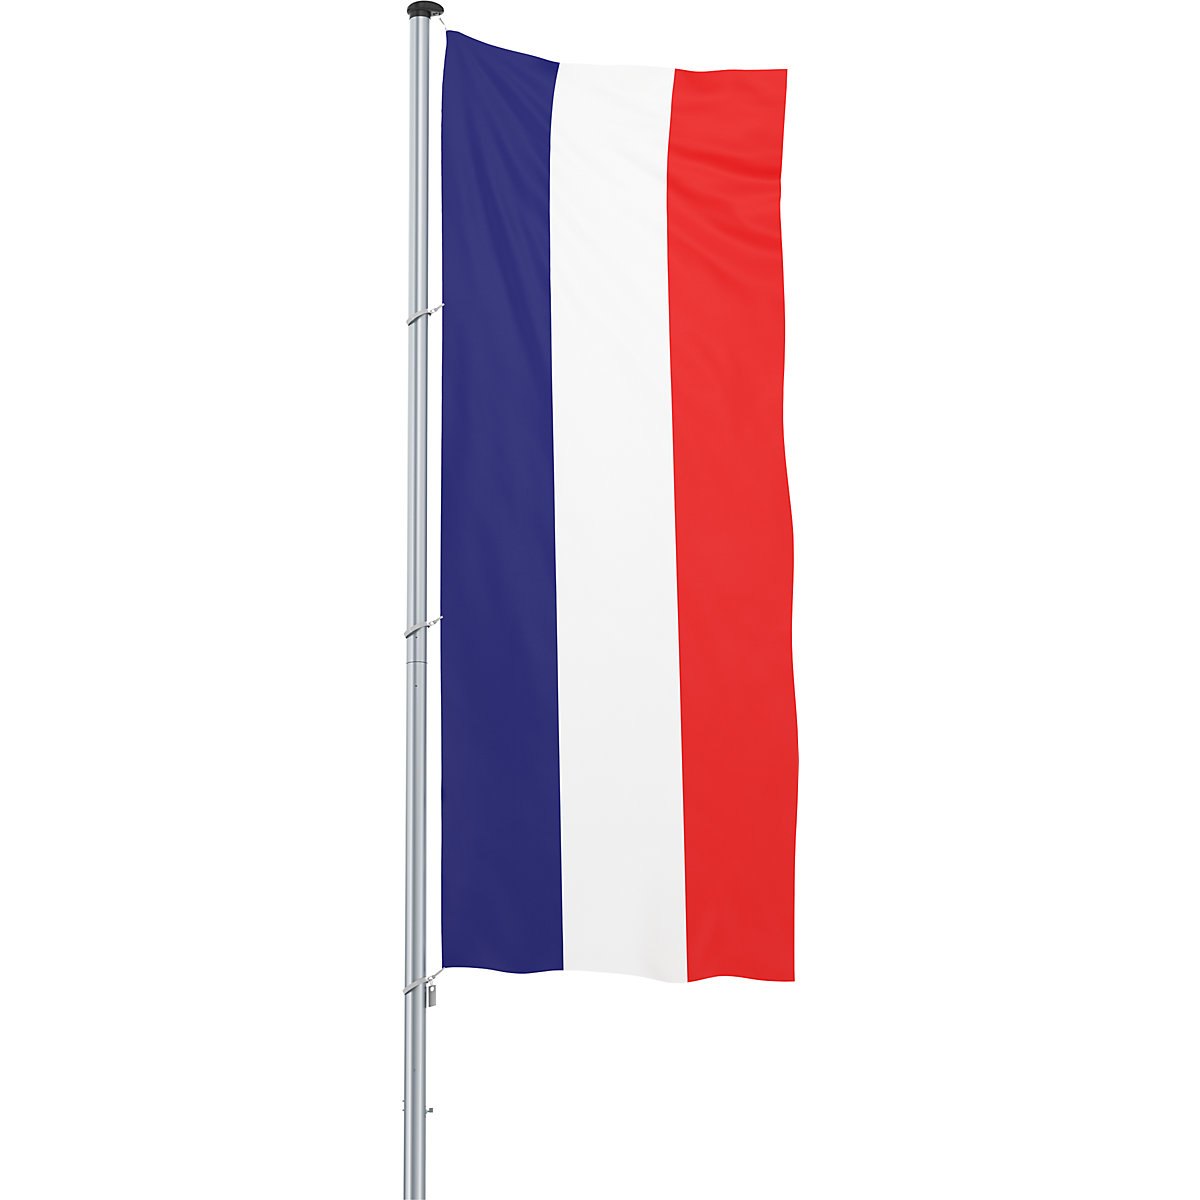 Bandeira para içar/bandeira nacional – Mannus, formato 1,2 x 3 m, França-22